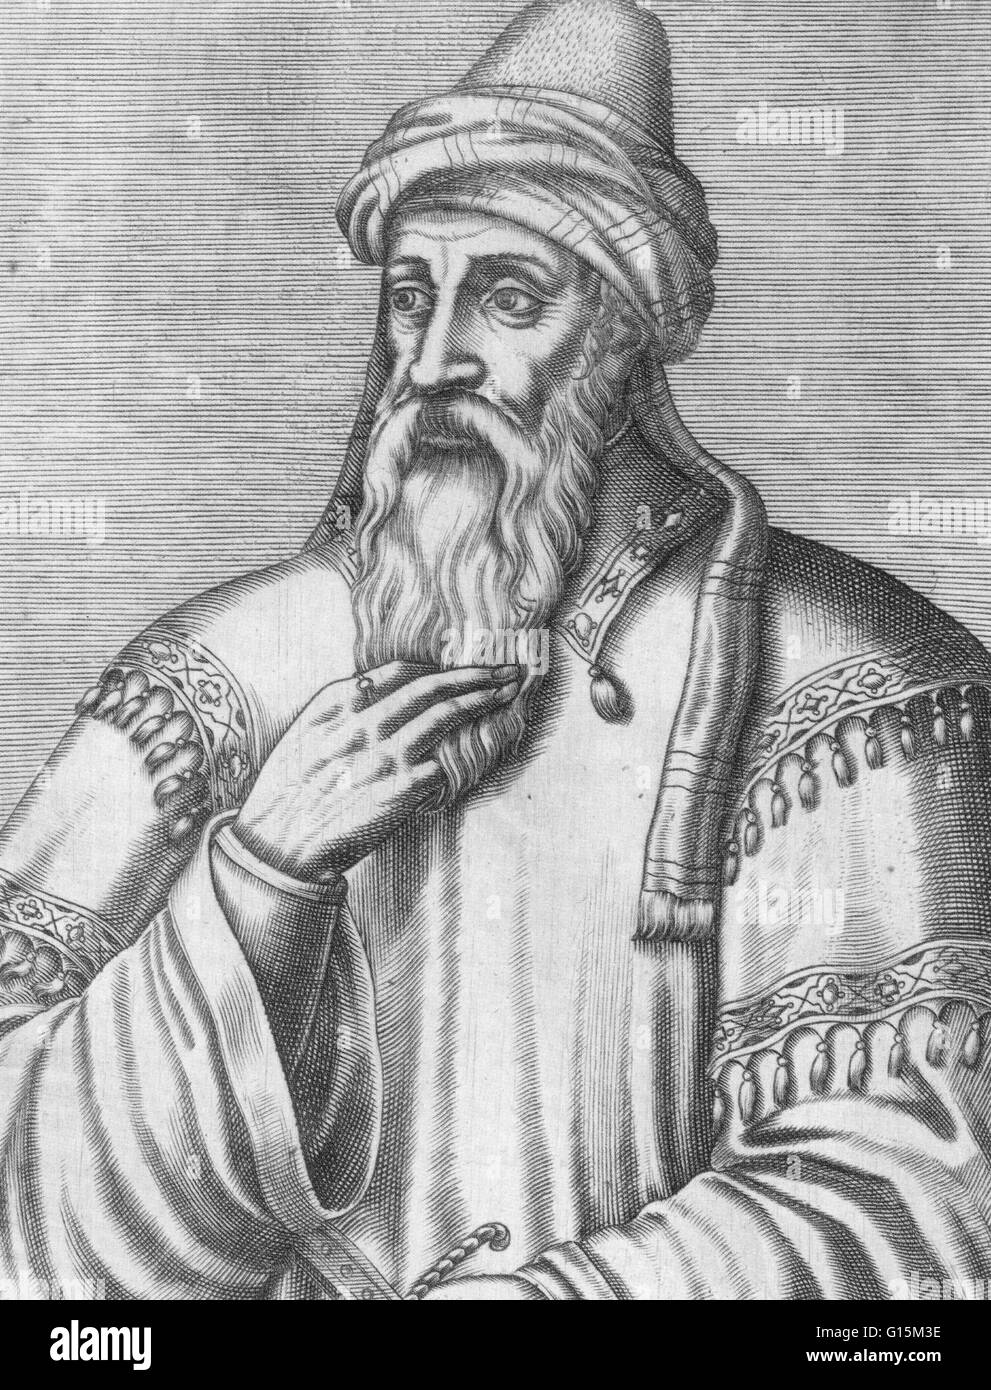 Salah Ad-Din Yusuf ibn Ayyub (1138-1193) war eine kurdische Muslim, wer wurde der erste Sultan von Ägypten und Syrien, und gründete die ayyubidische Dynastie. Auf dem Höhepunkt seiner Macht enthalten seine Sultanat Ägypten, Syrien, Mesopotamien, Hedschas, Jemen, und Teile des Nordens Stockfoto